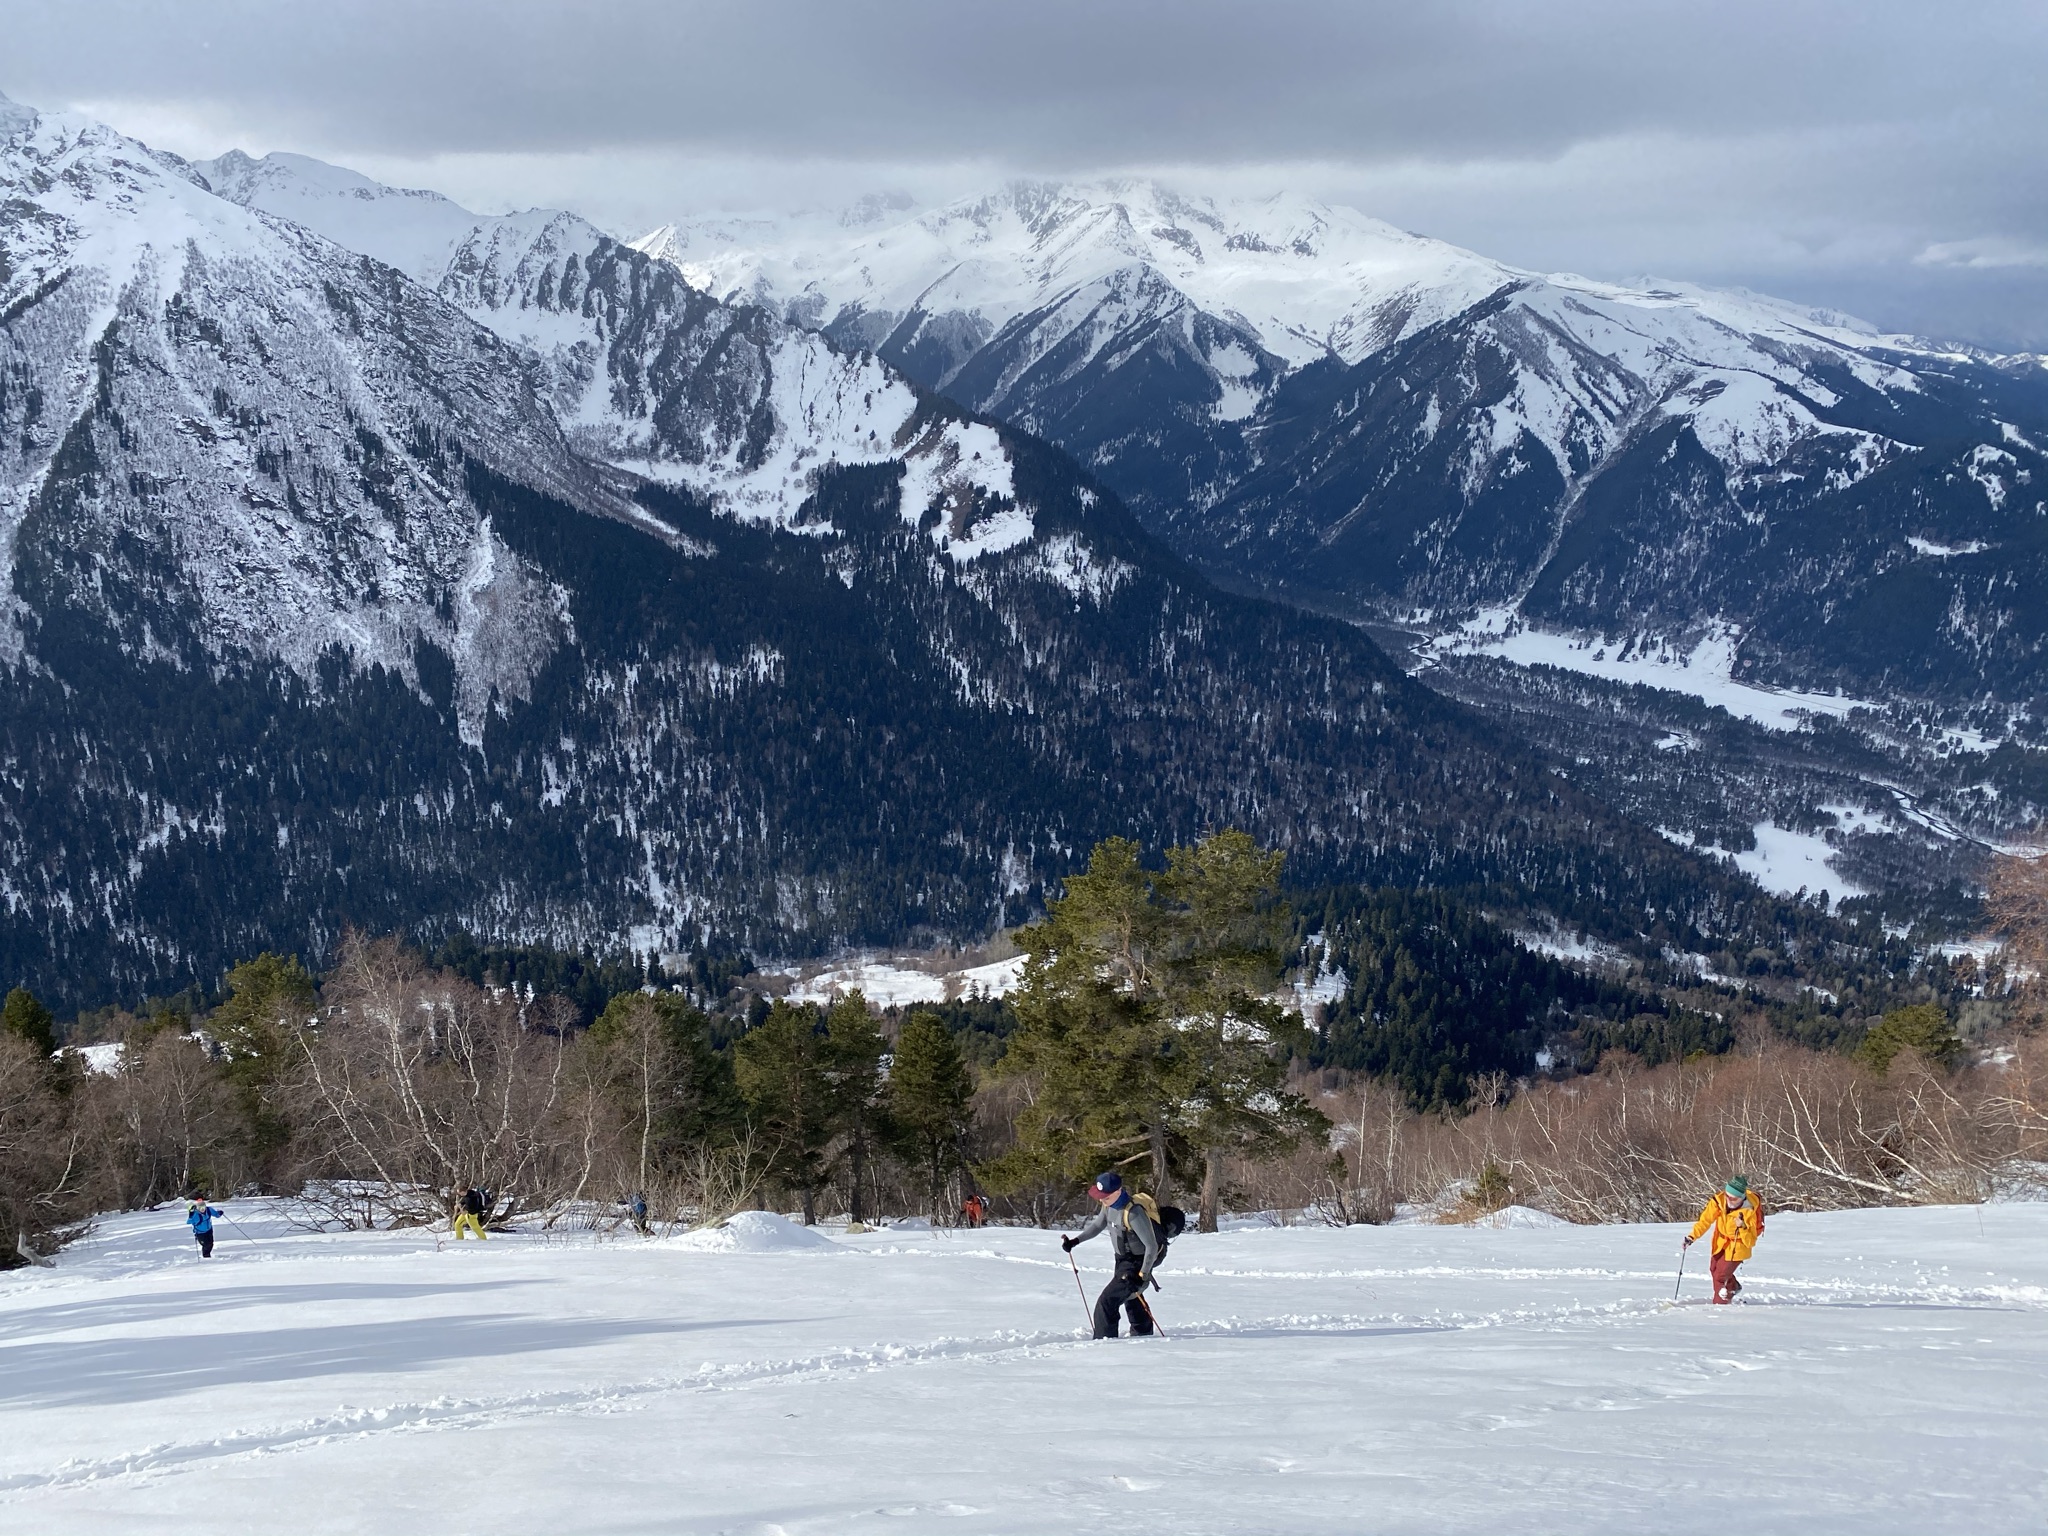 Ски-тур в Архызе